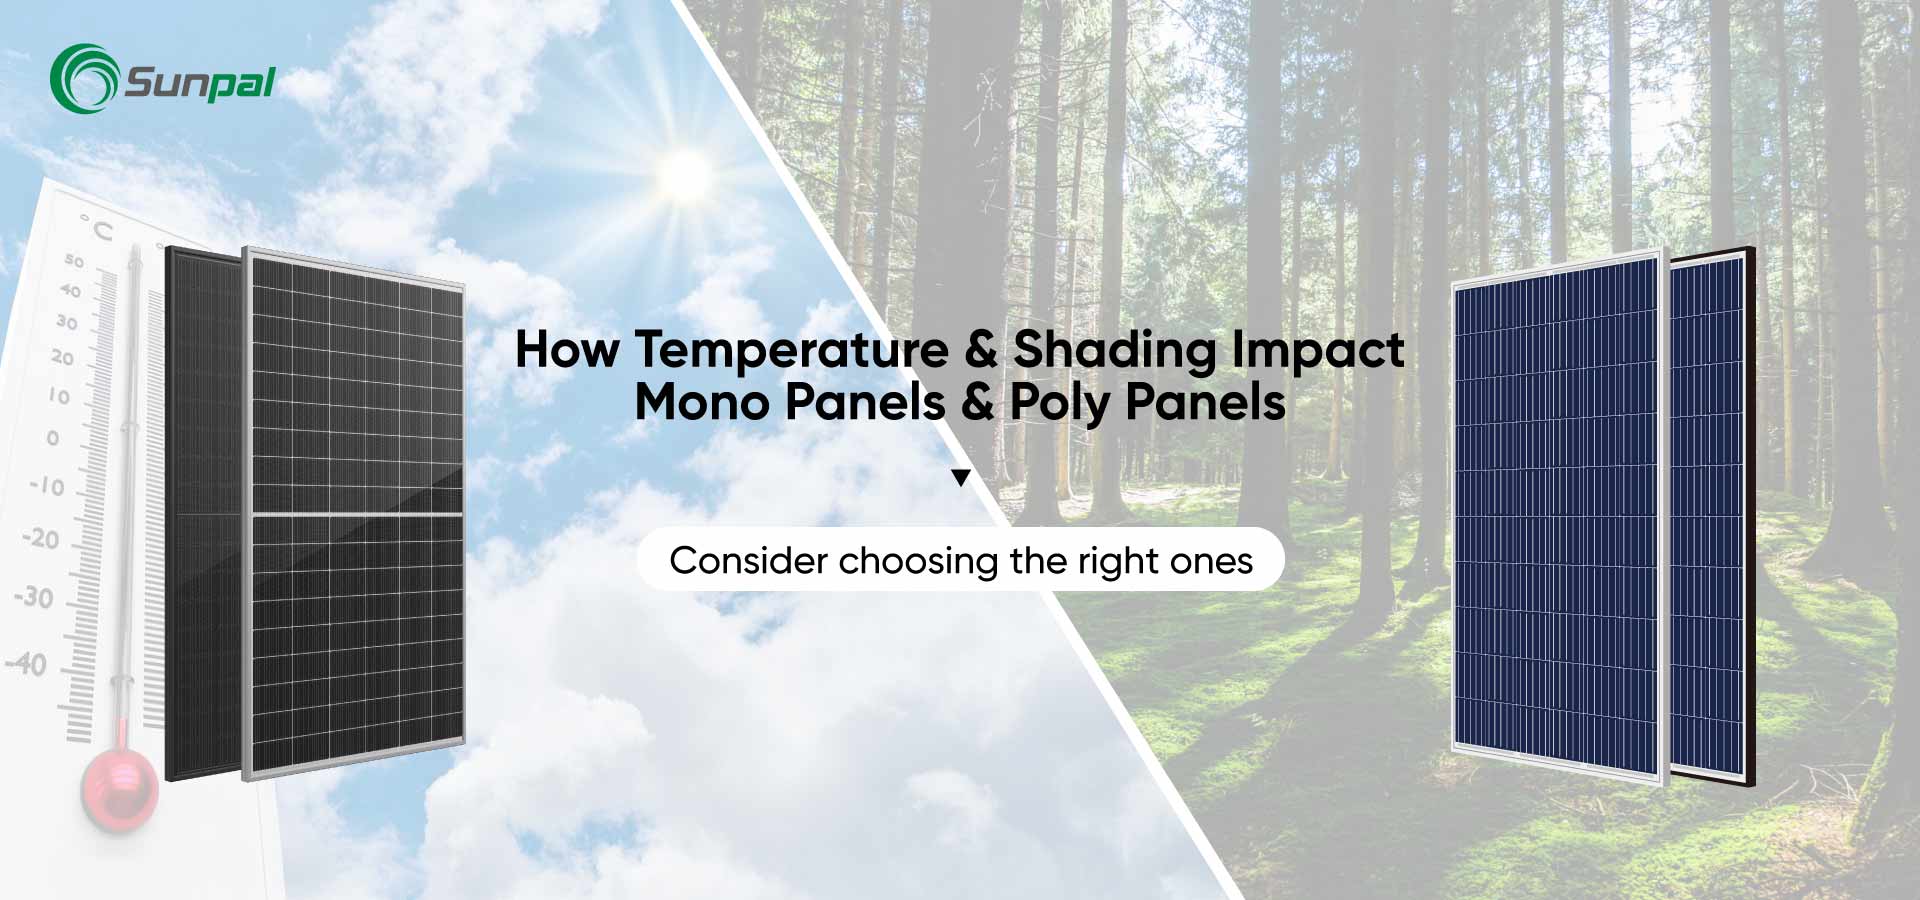 Temperatura y sombreado: impacto en los paneles mono y polivinílicos